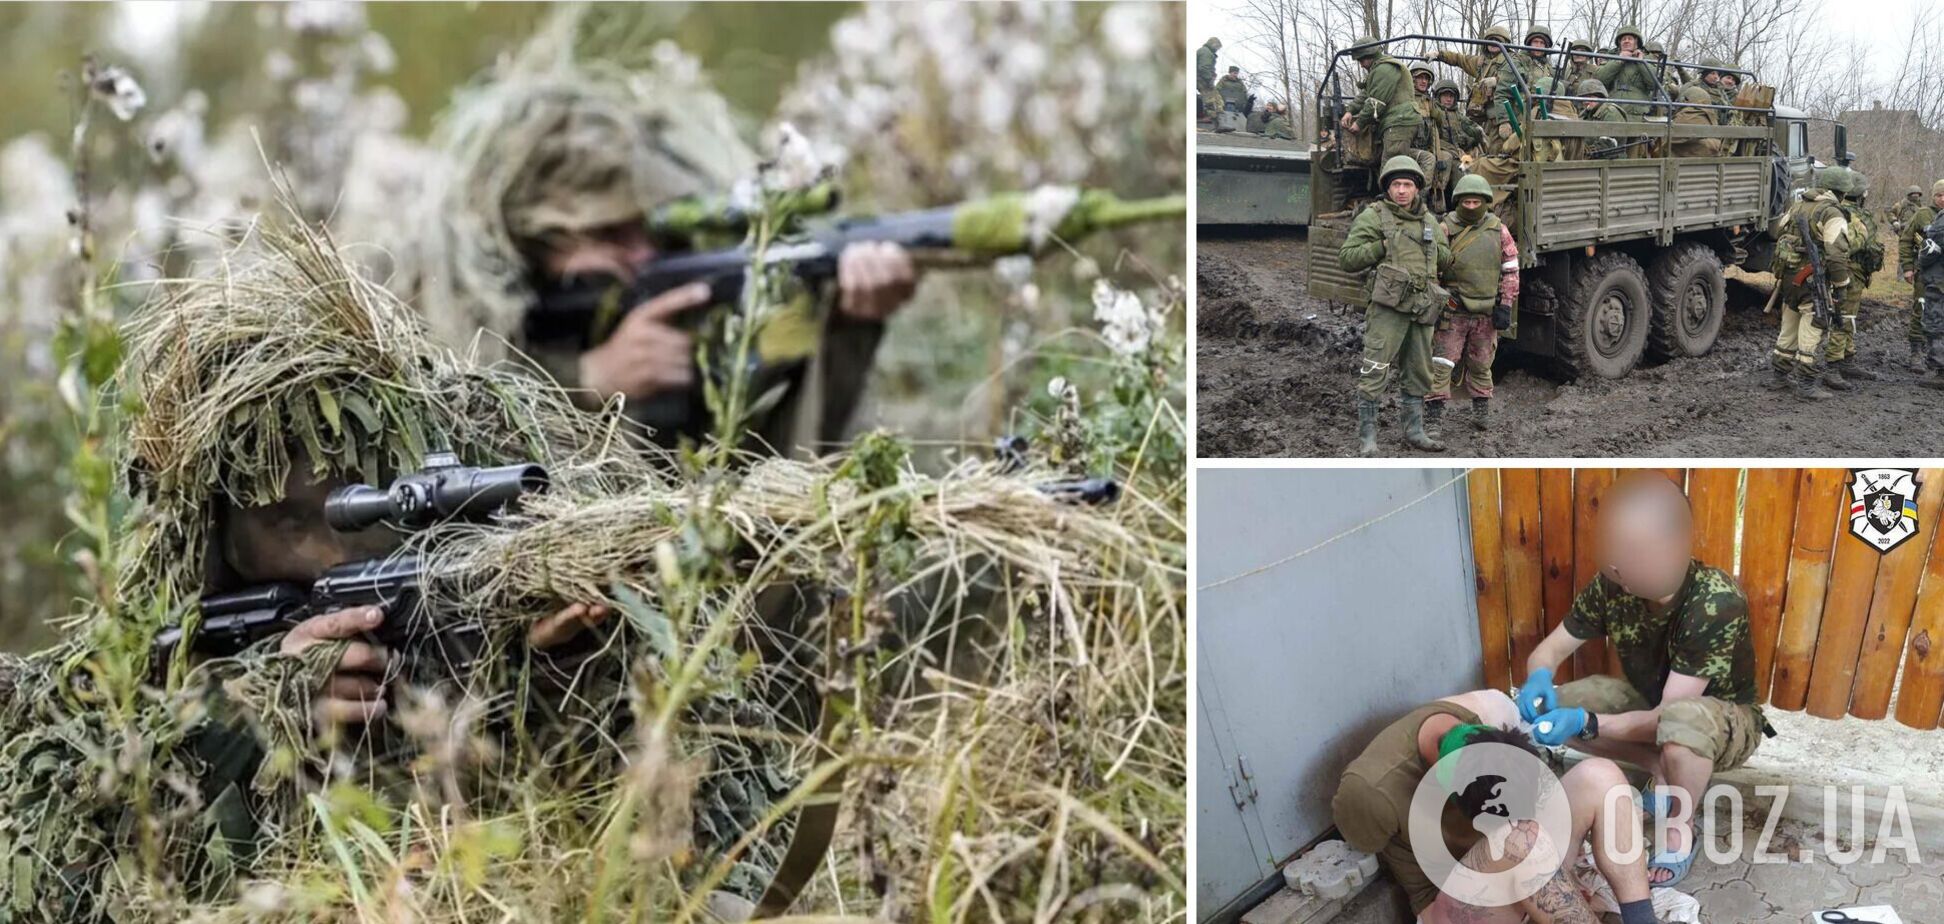 Беларусские добровольцы в Украине взяли в плен российского снайпера. Видео